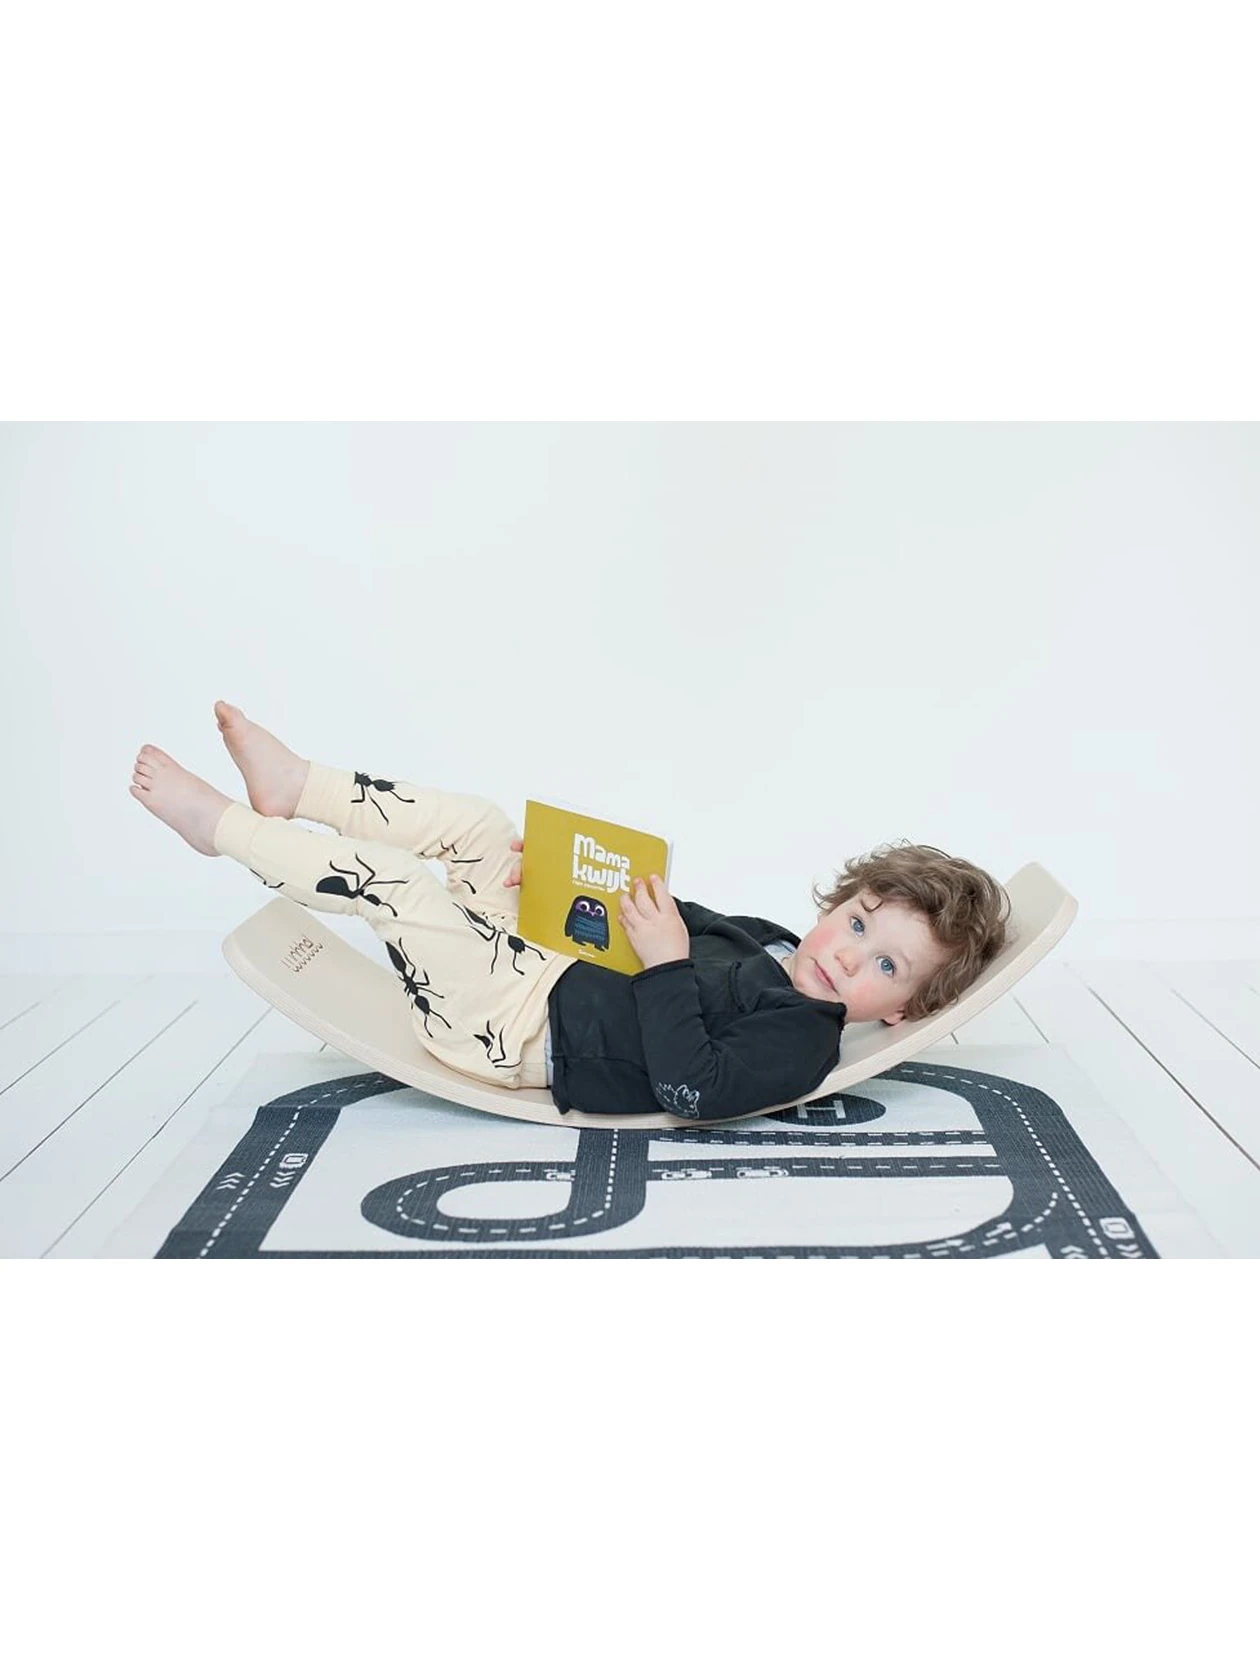 Dziecko na desce balansującej czyta książkę.